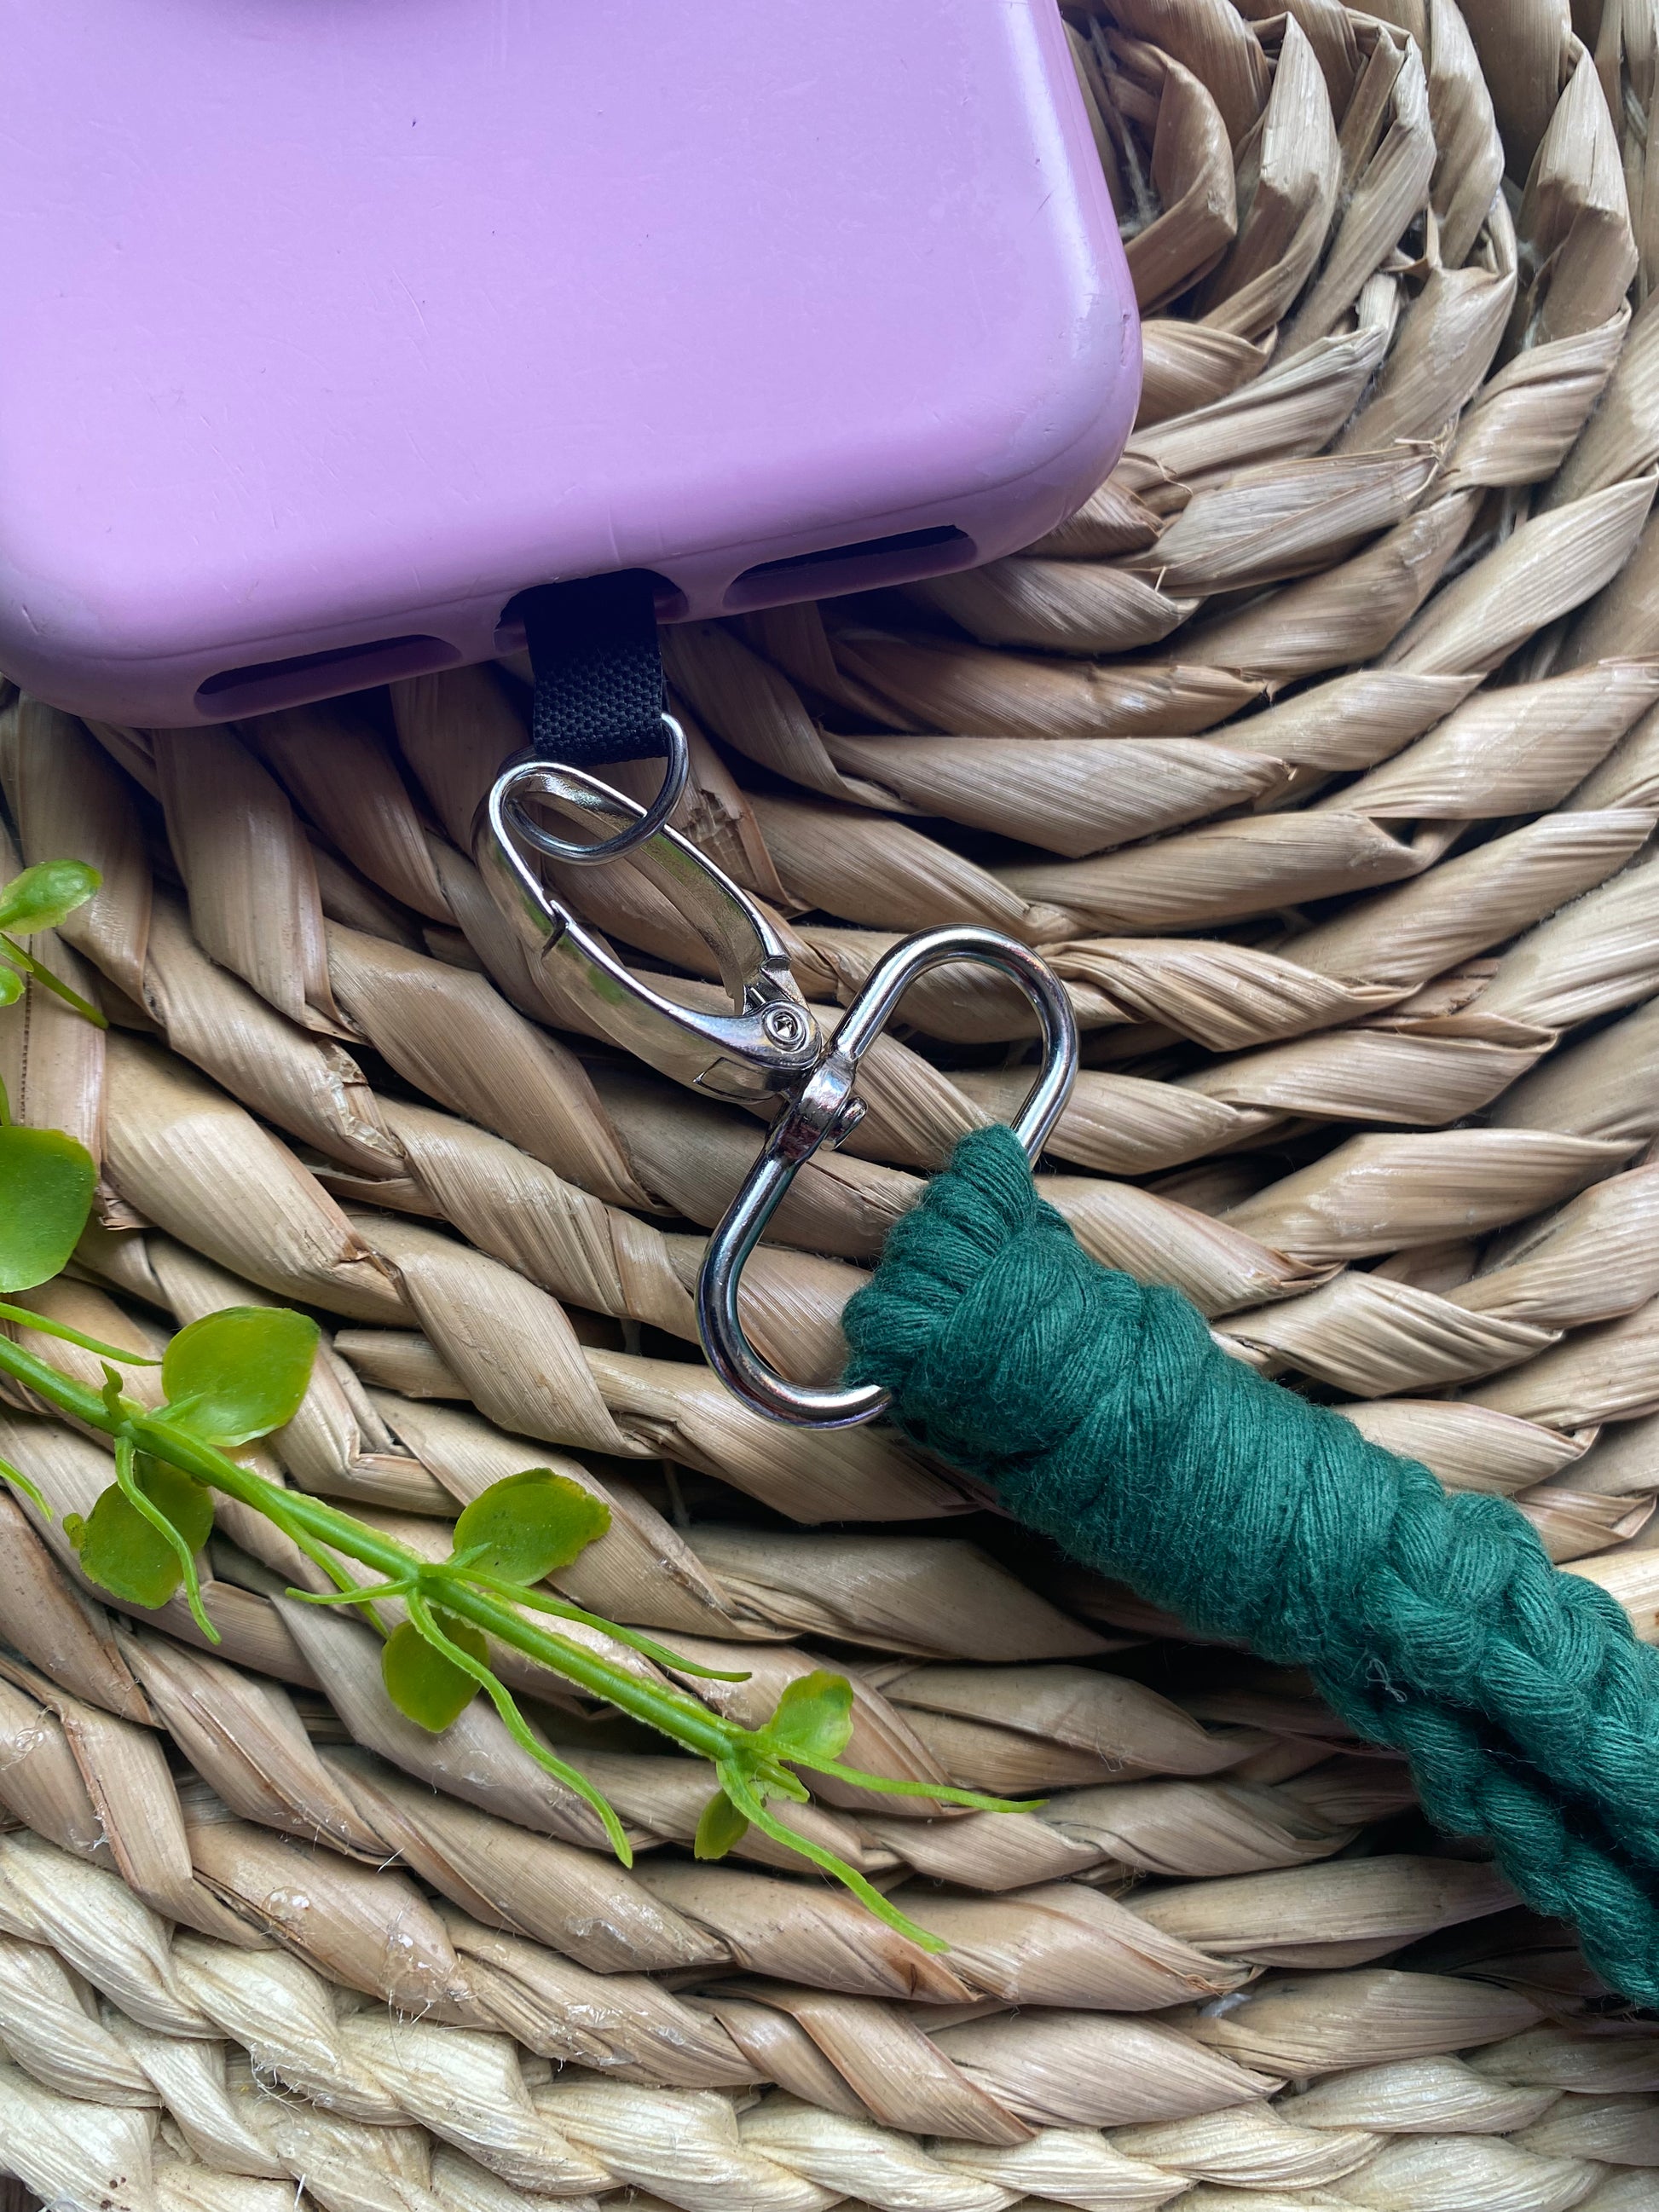 Silver Daisy Rhinestone Puffy Tassel Key Chain Purse Charm Handbag Accessory